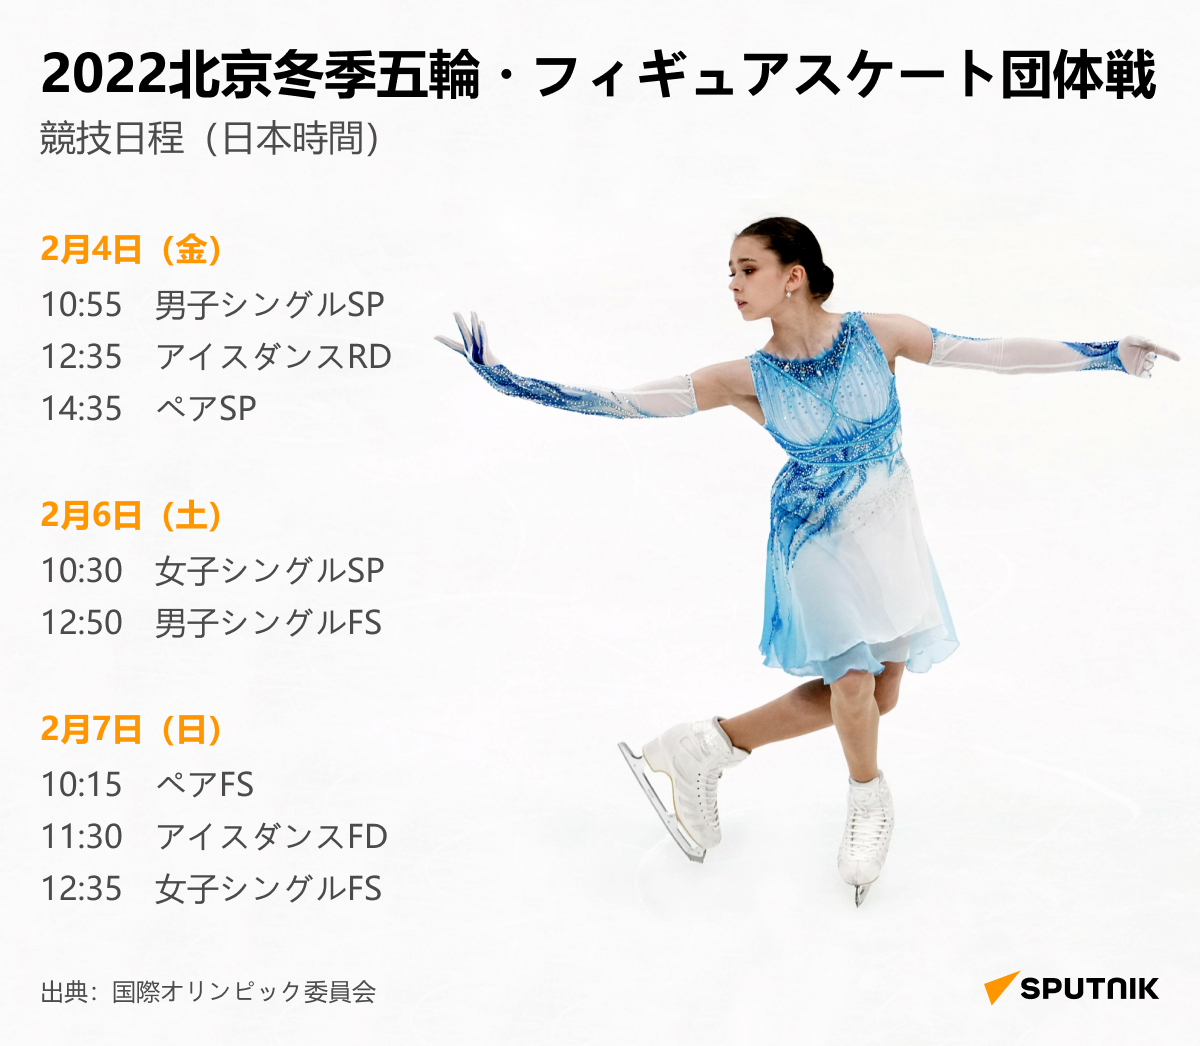 北京オリンピック・フィギュアスケート競技日程 - Sputnik 日本